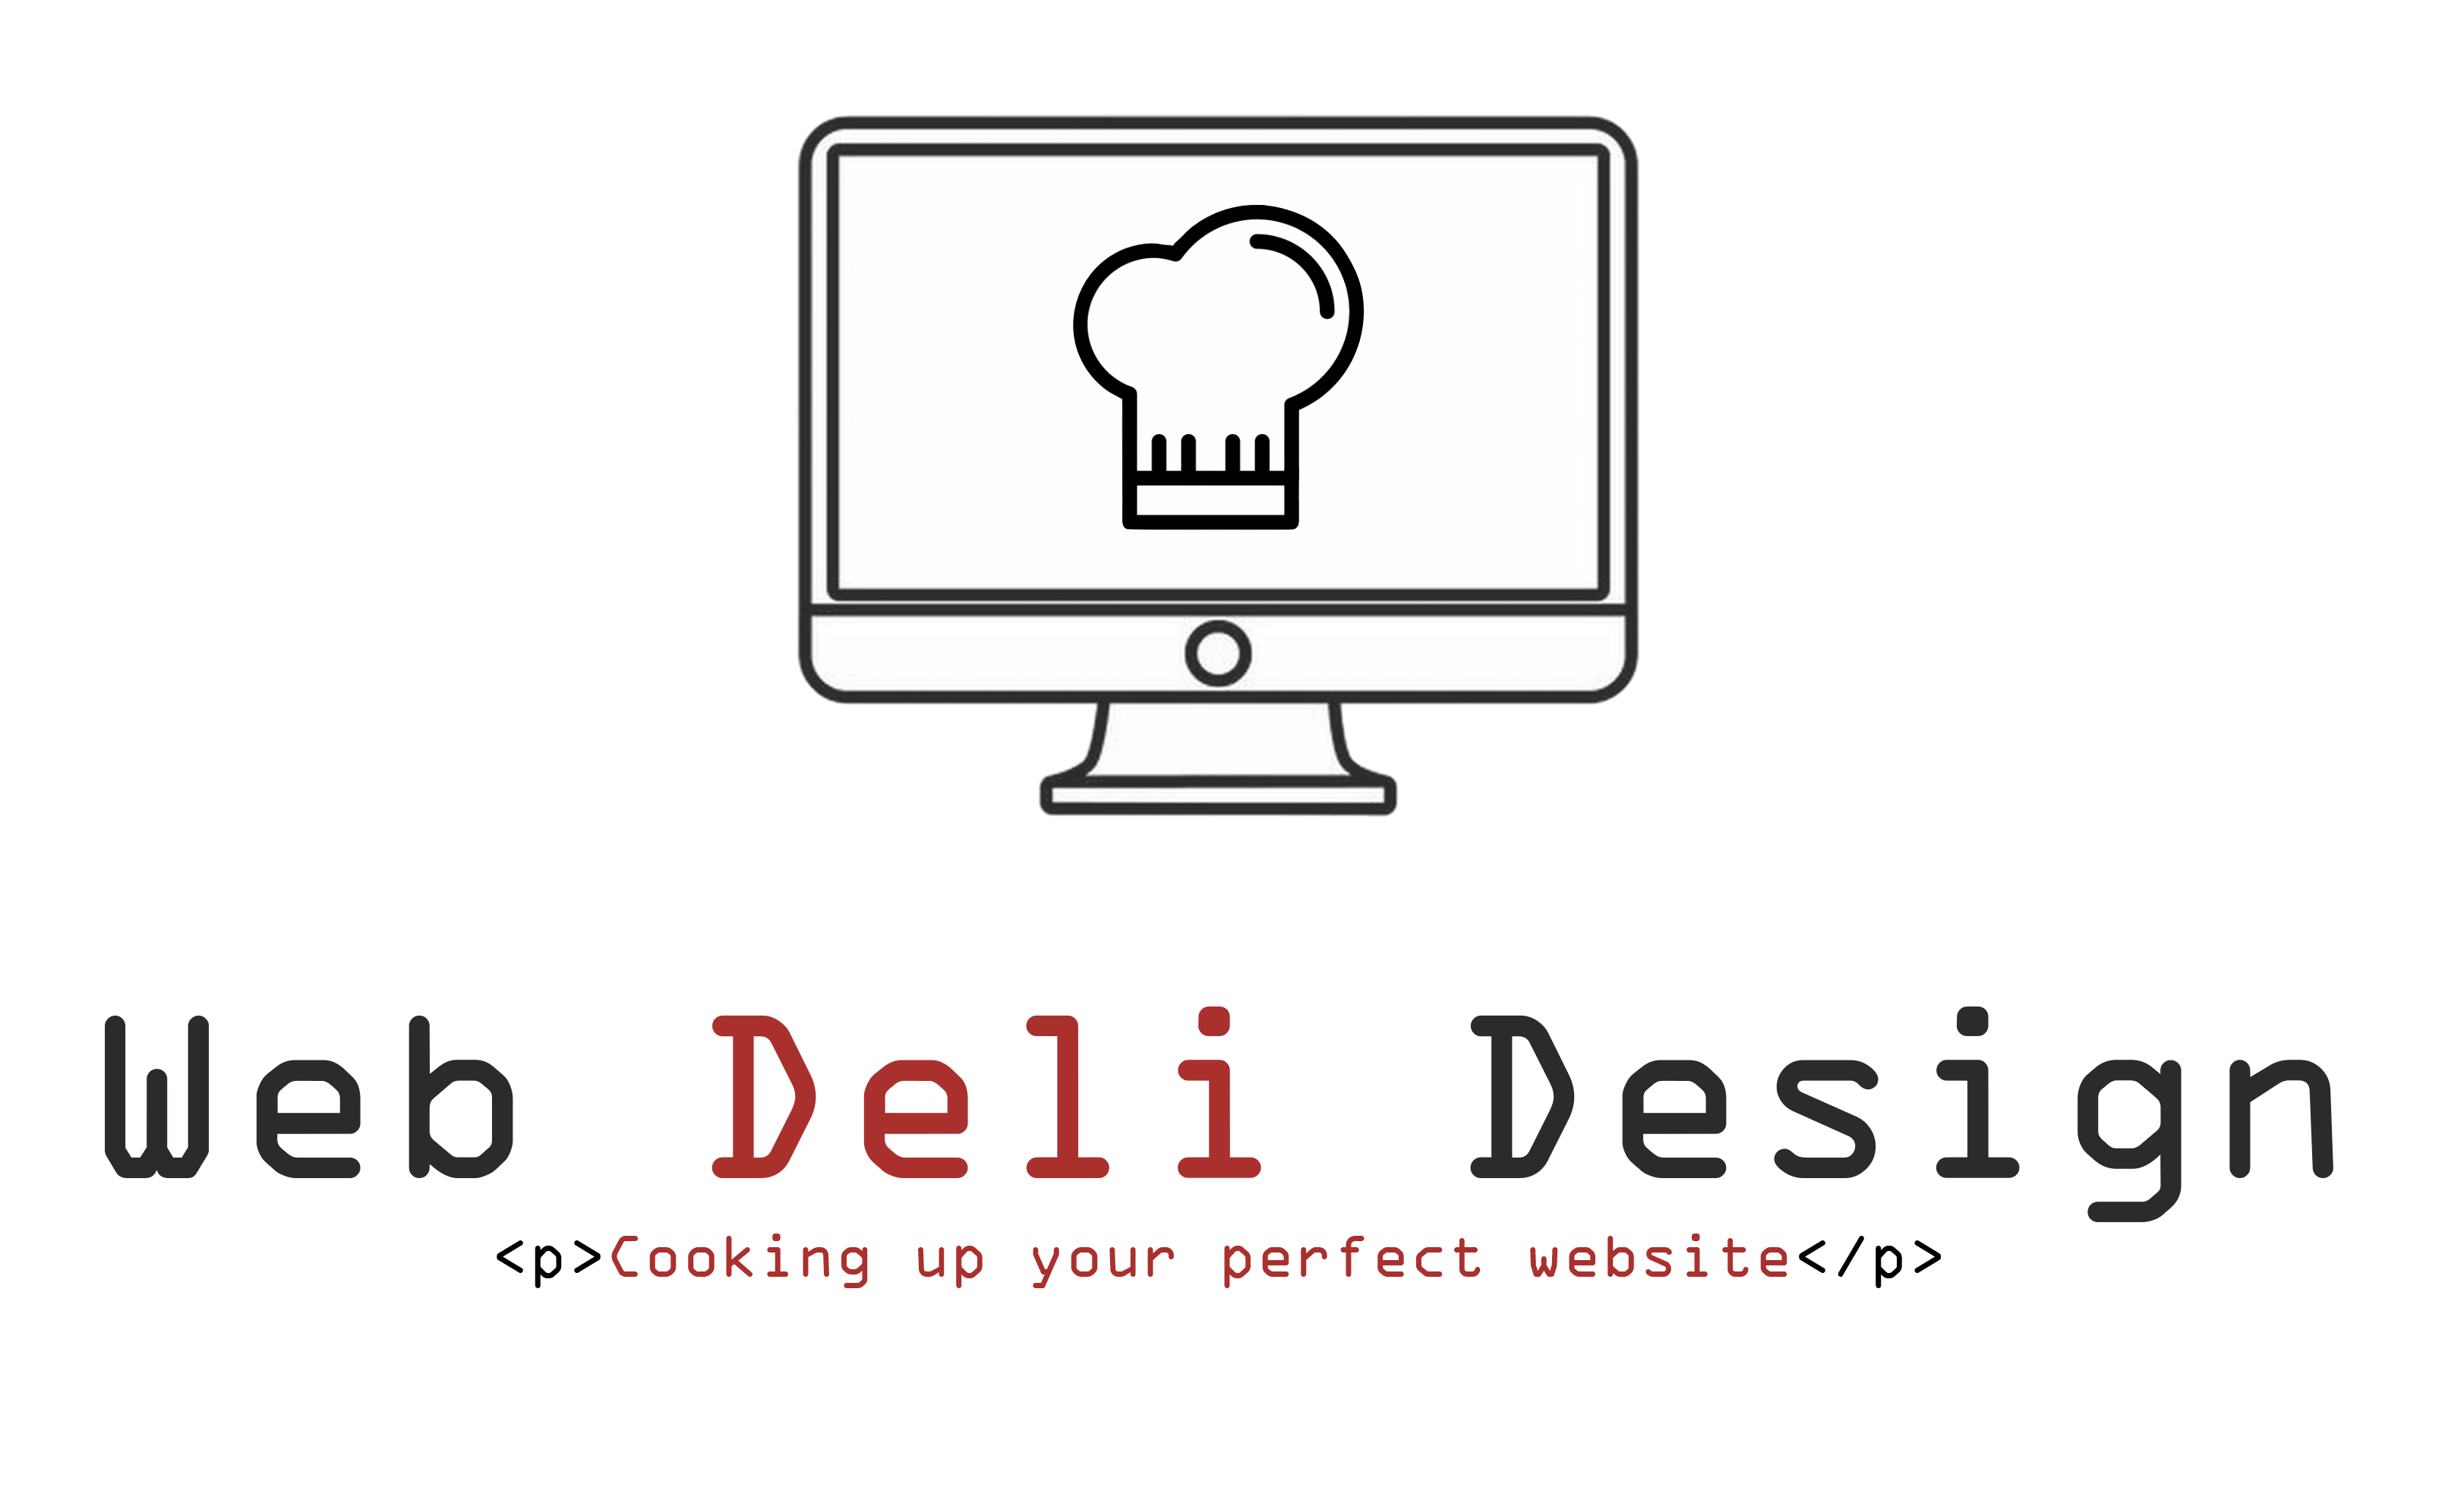 Web Deli Design